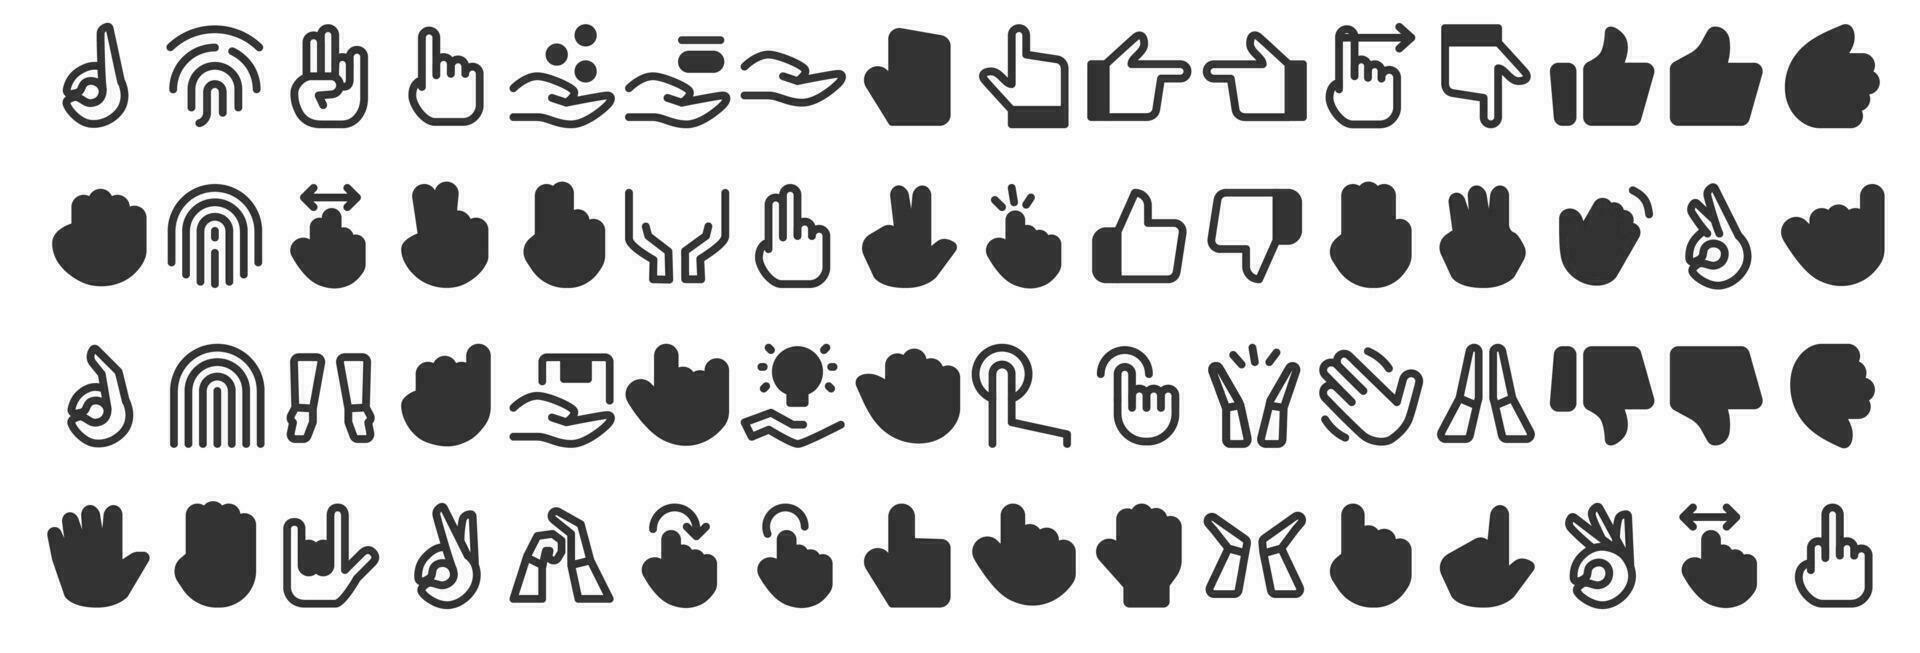 mano gesto emojis línea íconos colocar. señalando dedos, puños, palmas social medios de comunicación, red emoticonos OK, Hola, roca, me gusta gesticulando mano simbolos aislado vector 10 eps.